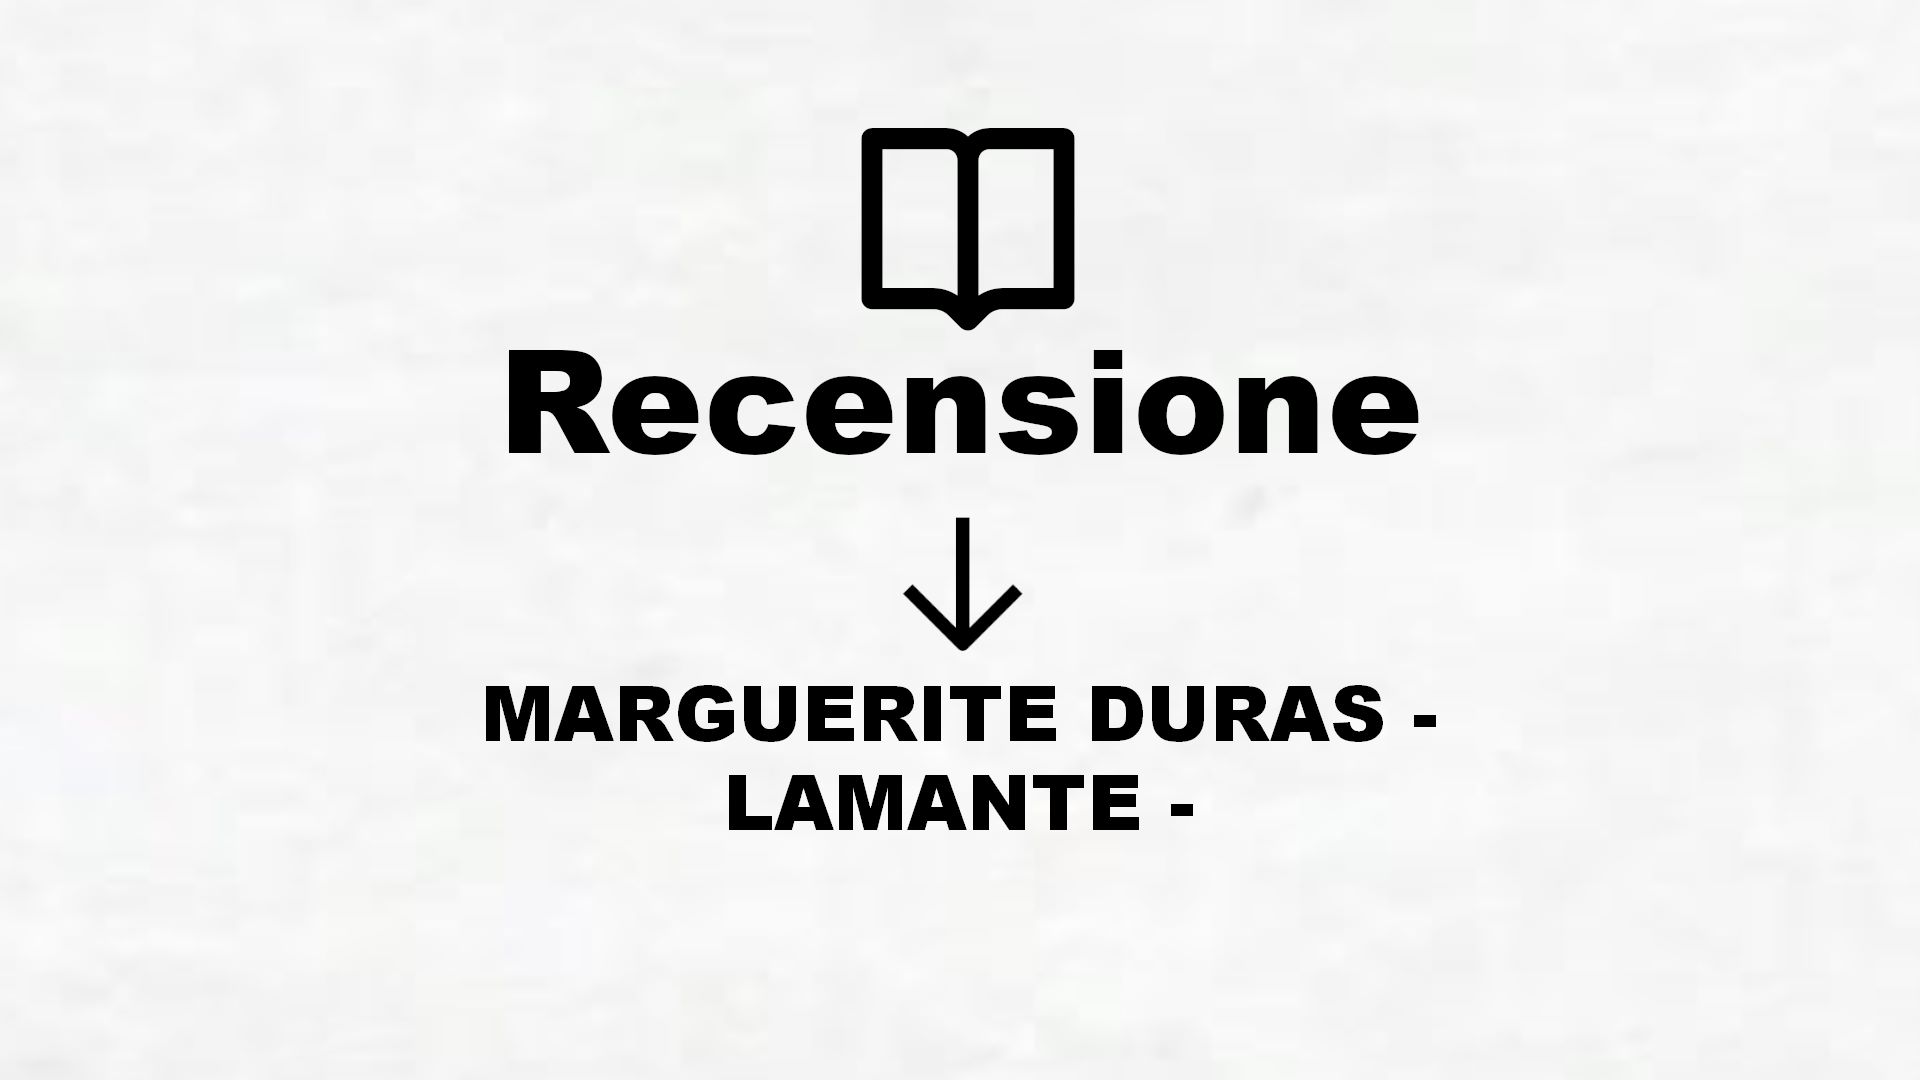 MARGUERITE DURAS – LAMANTE – – Recensione Libro